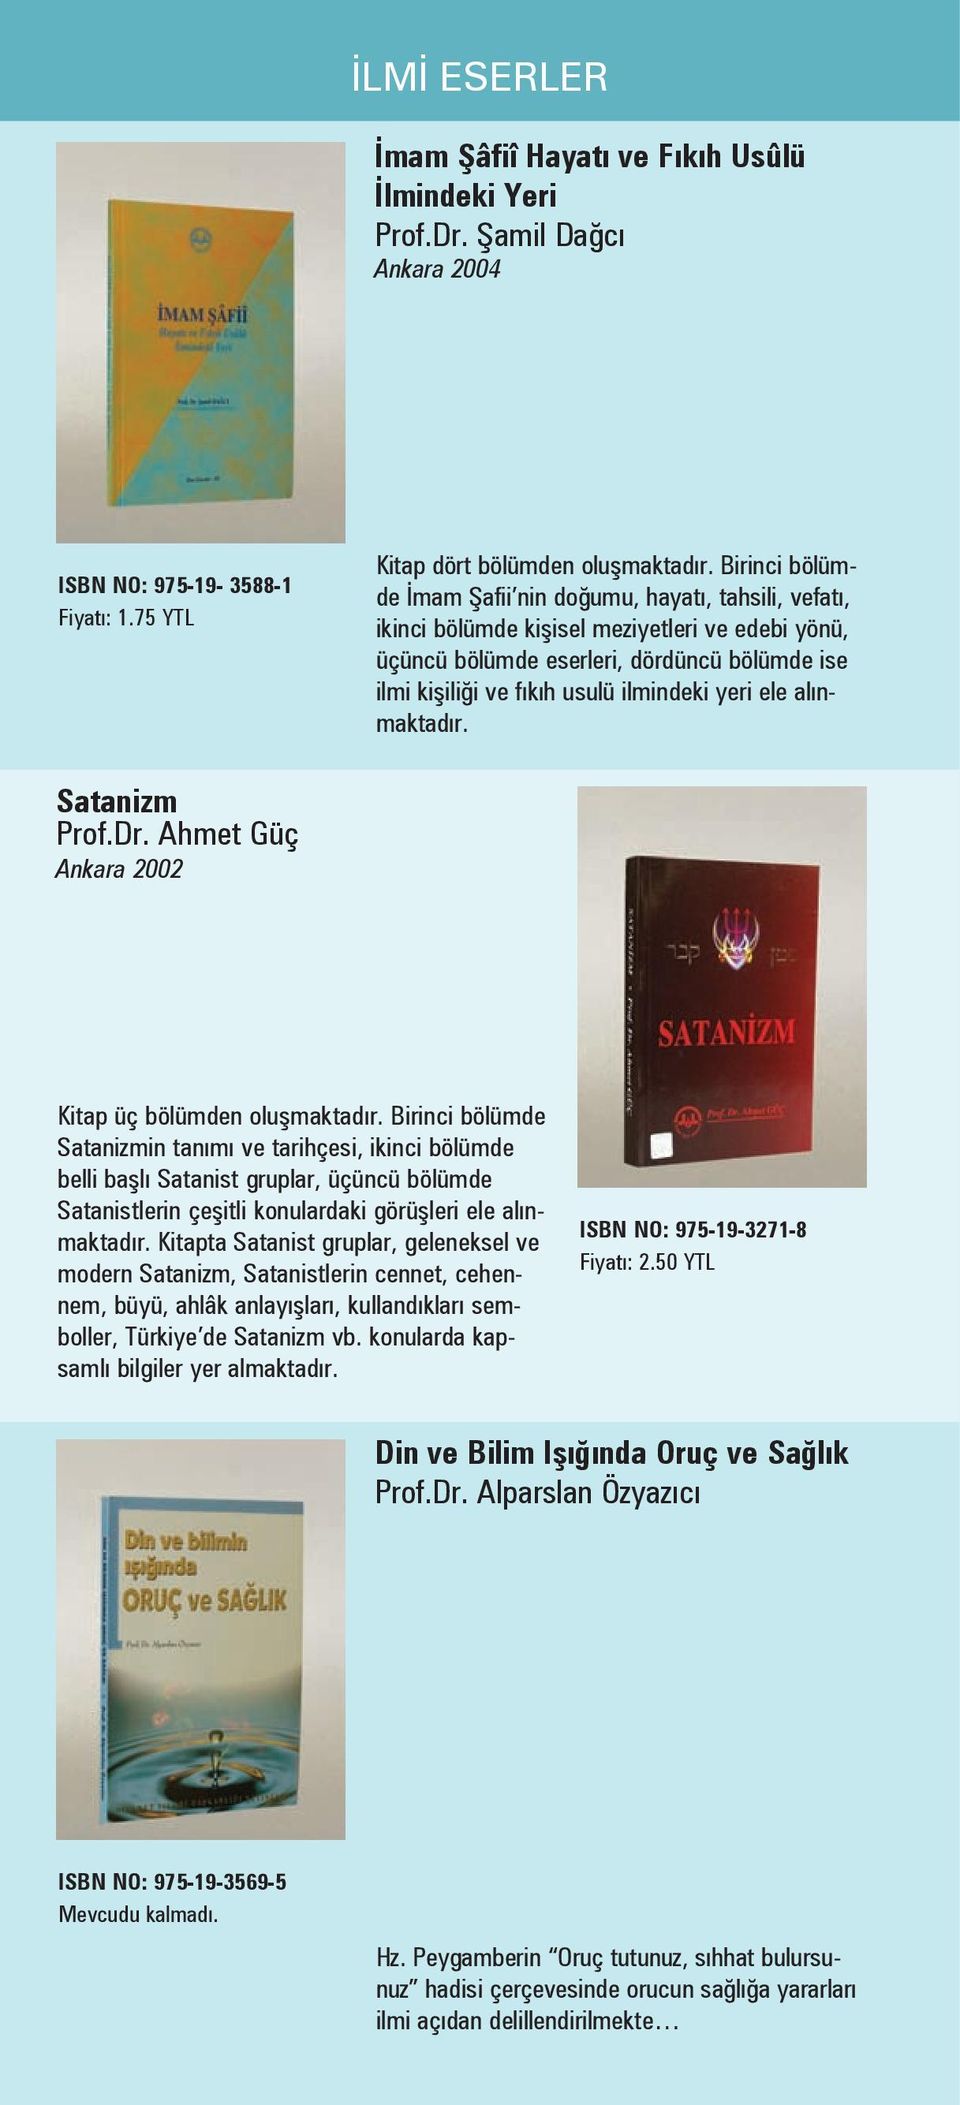 yeri ele alınmaktadır. Satanizm Prof.Dr. Ahmet Güç Ankara 2002 Kitap üç bölümden oluşmaktadır.